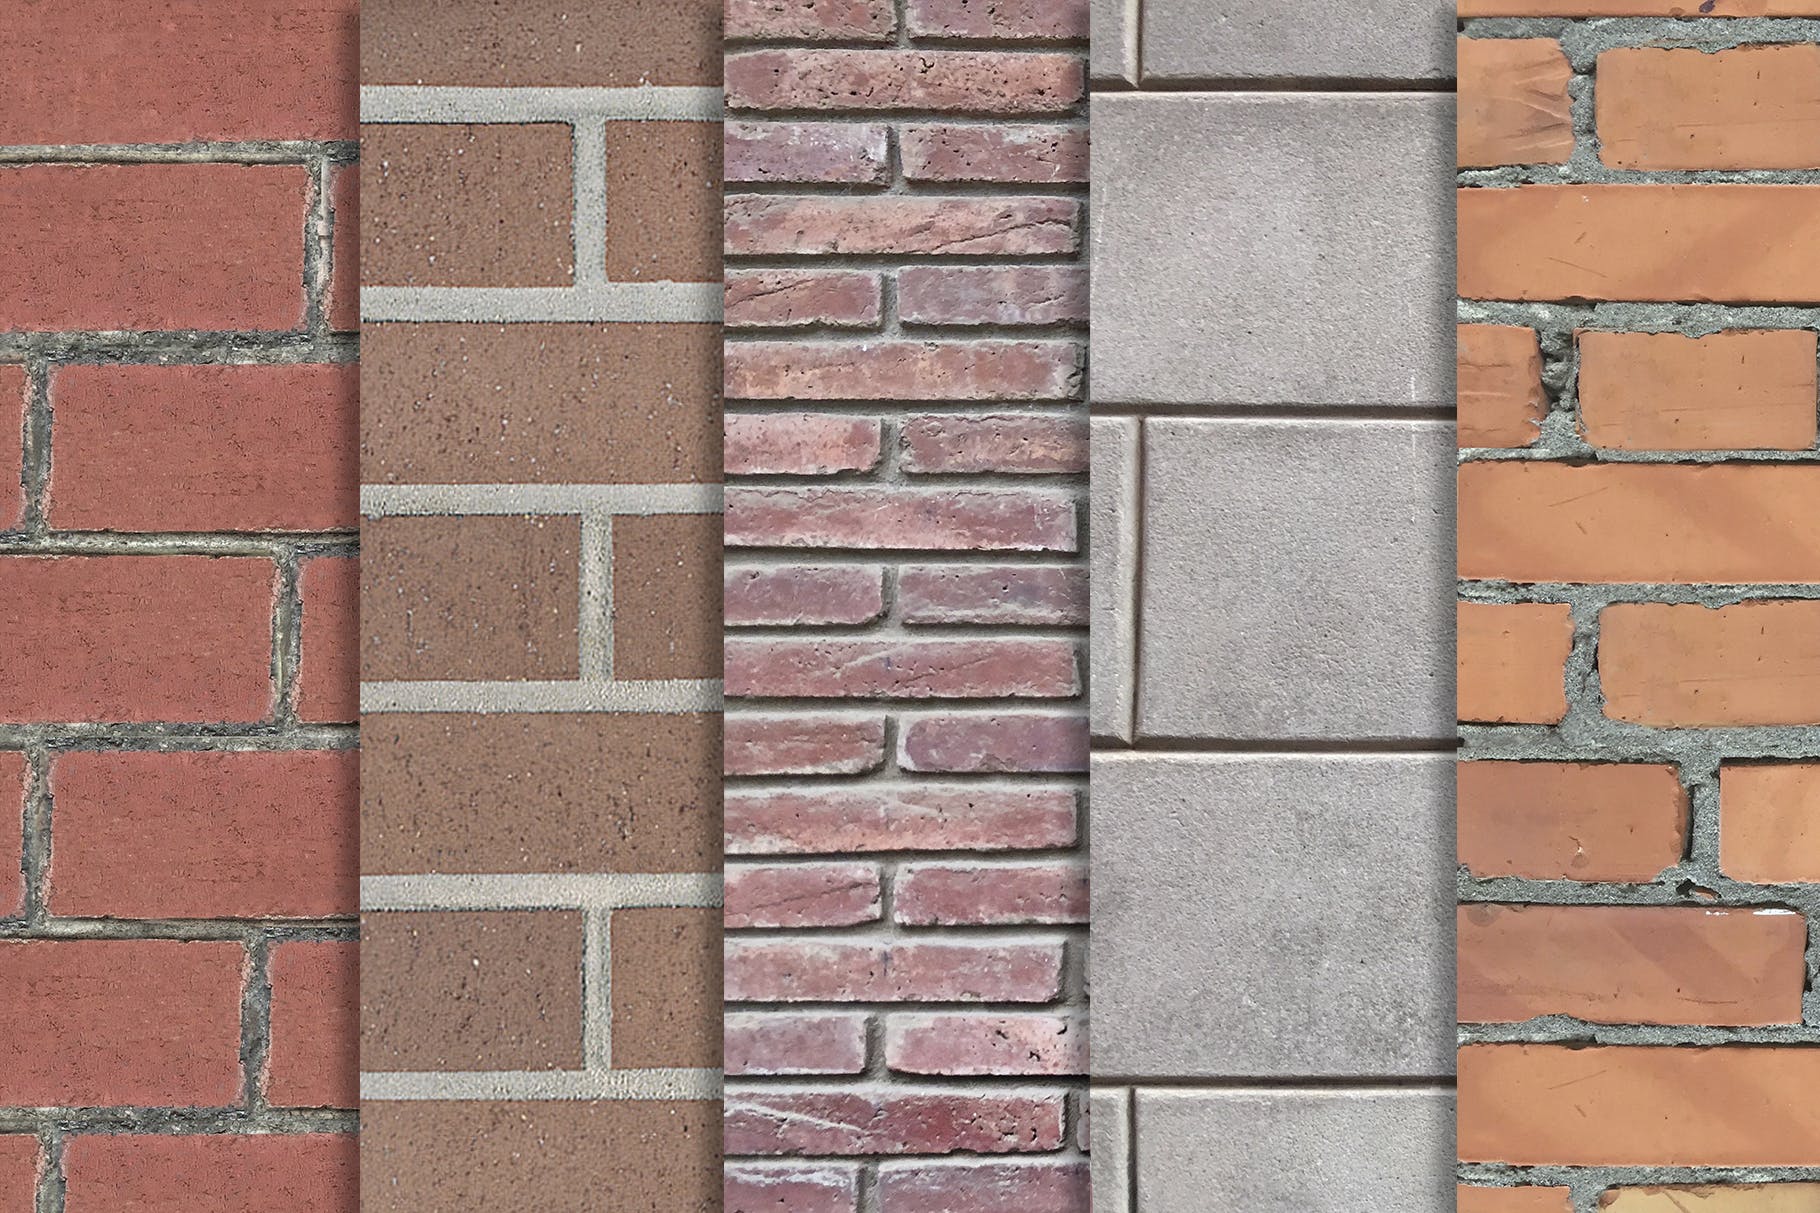 10张砖墙纹理高清蚂蚁素材精选背景素材v3 Brick Wall Textures x10 Vol 3插图(1)